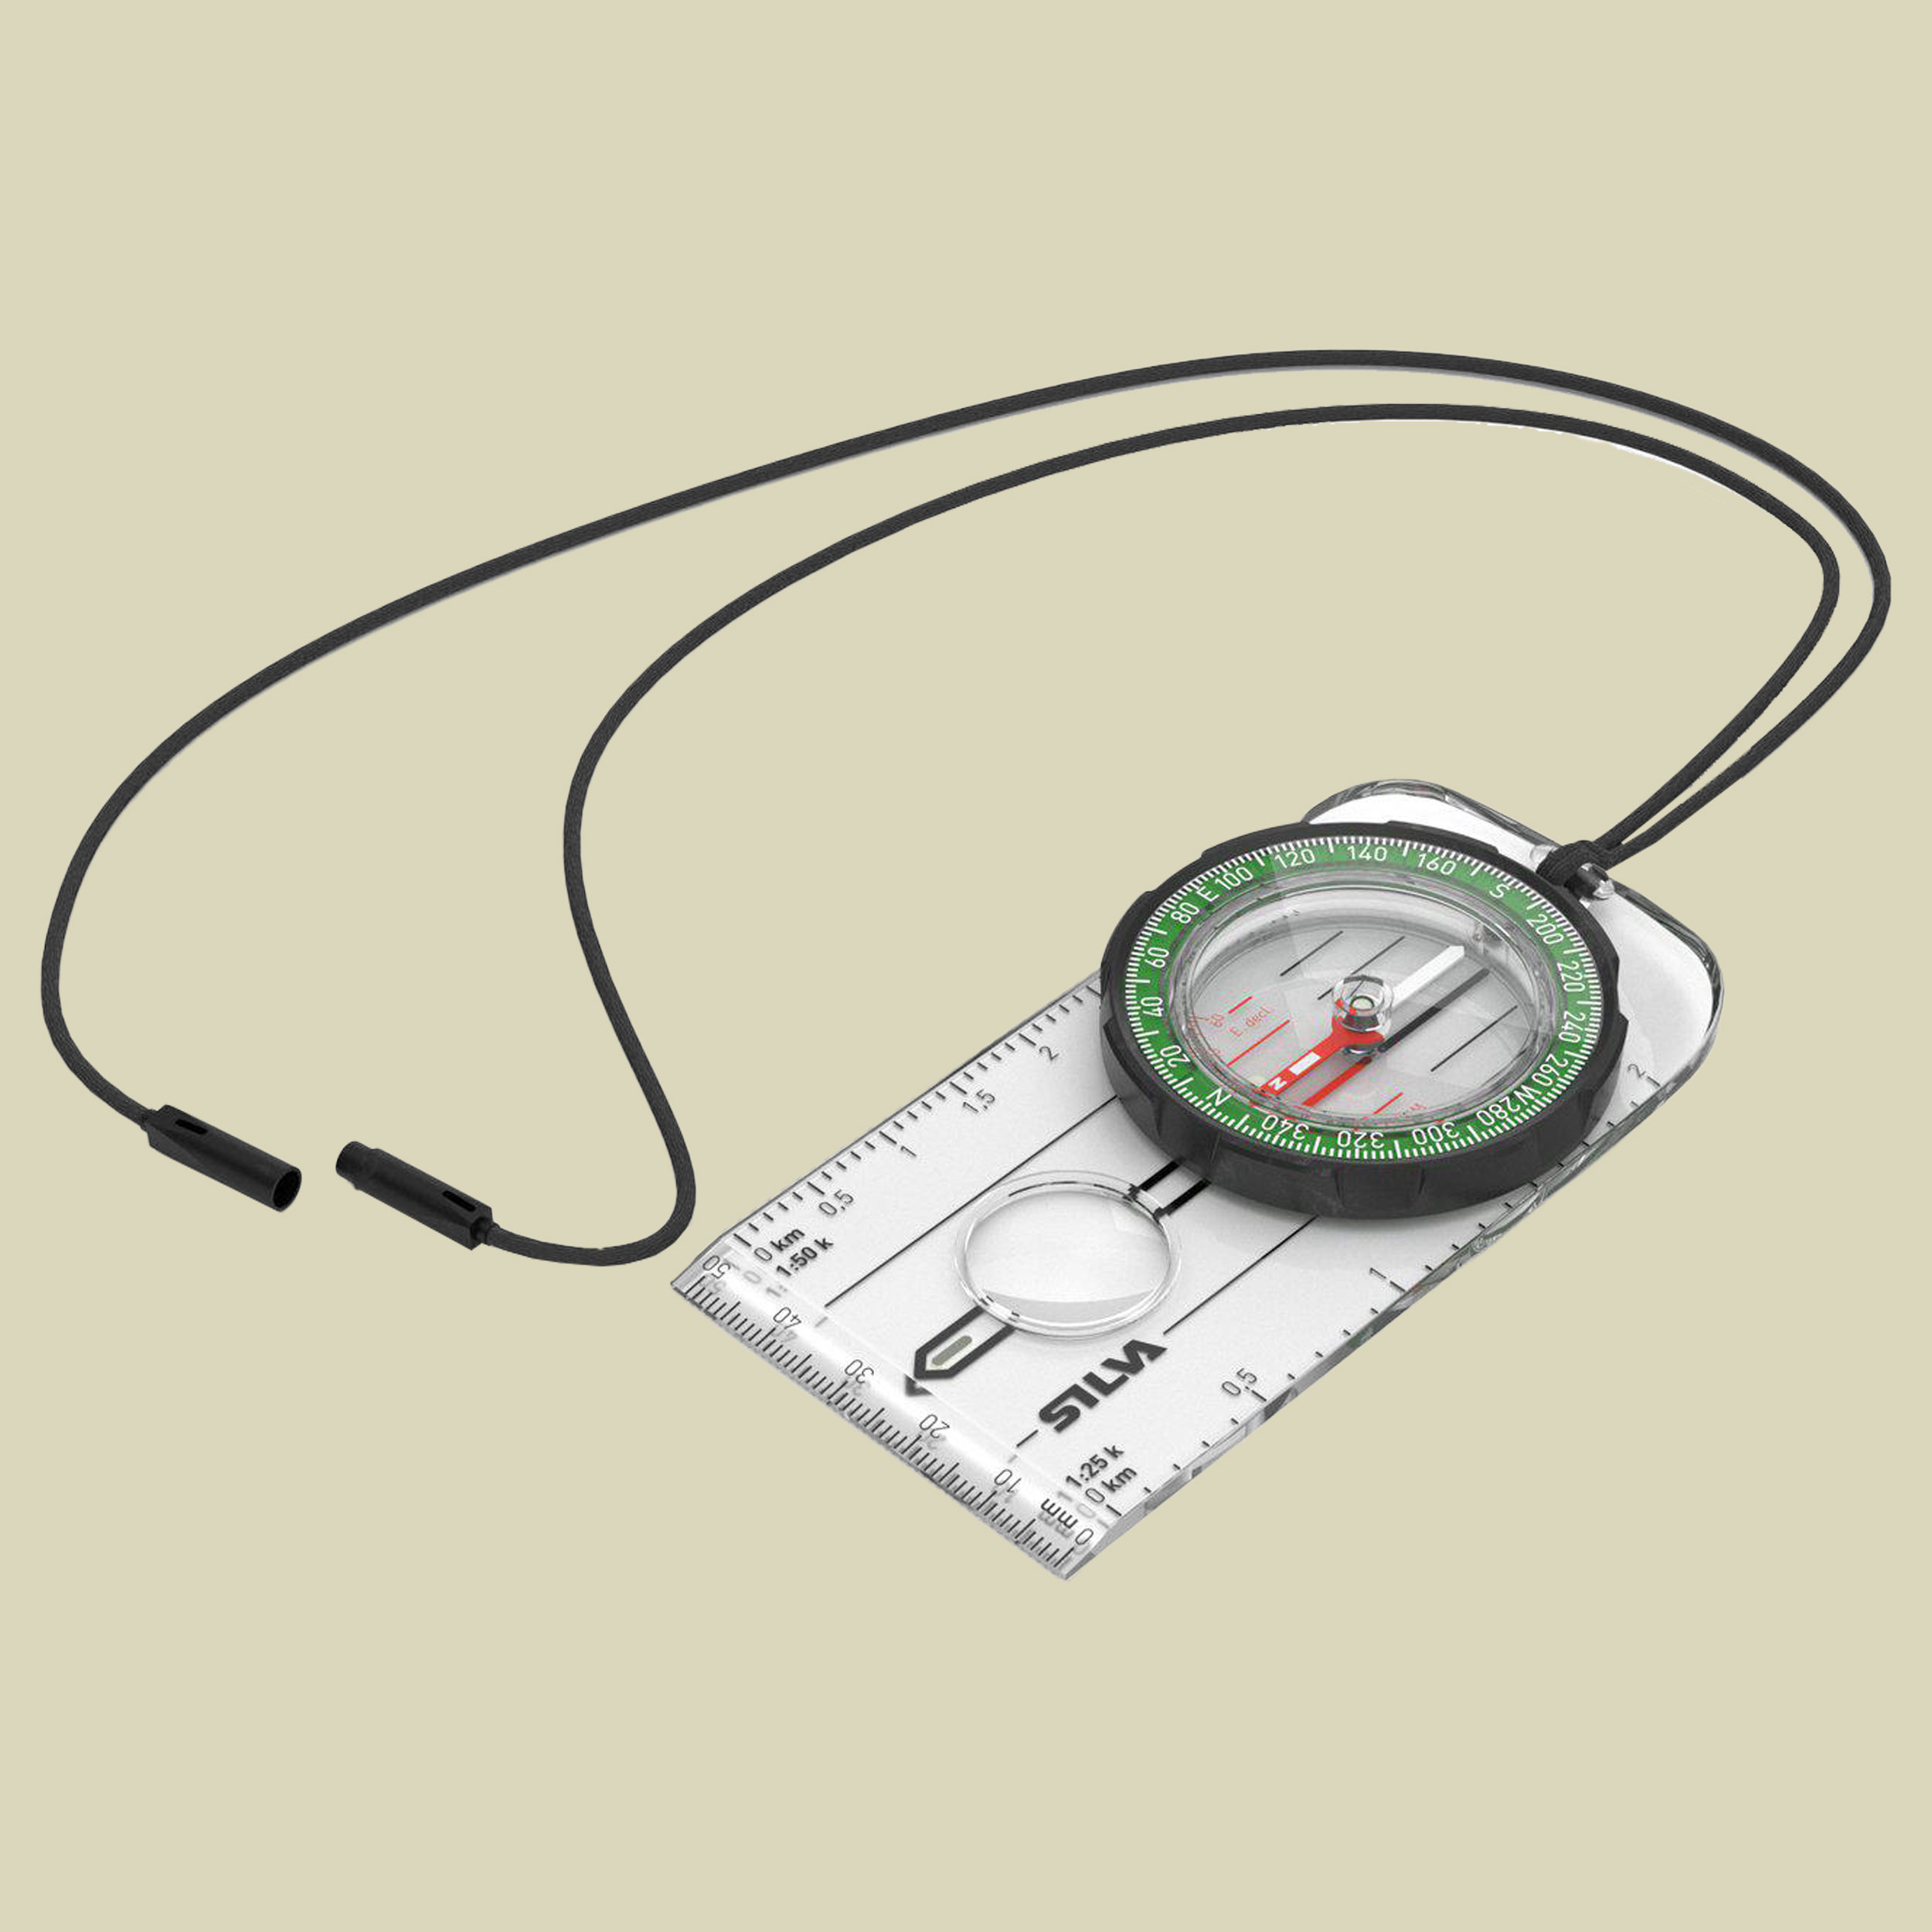 Kompass Ranger Maße: 10.7x5.4x1.1 cm